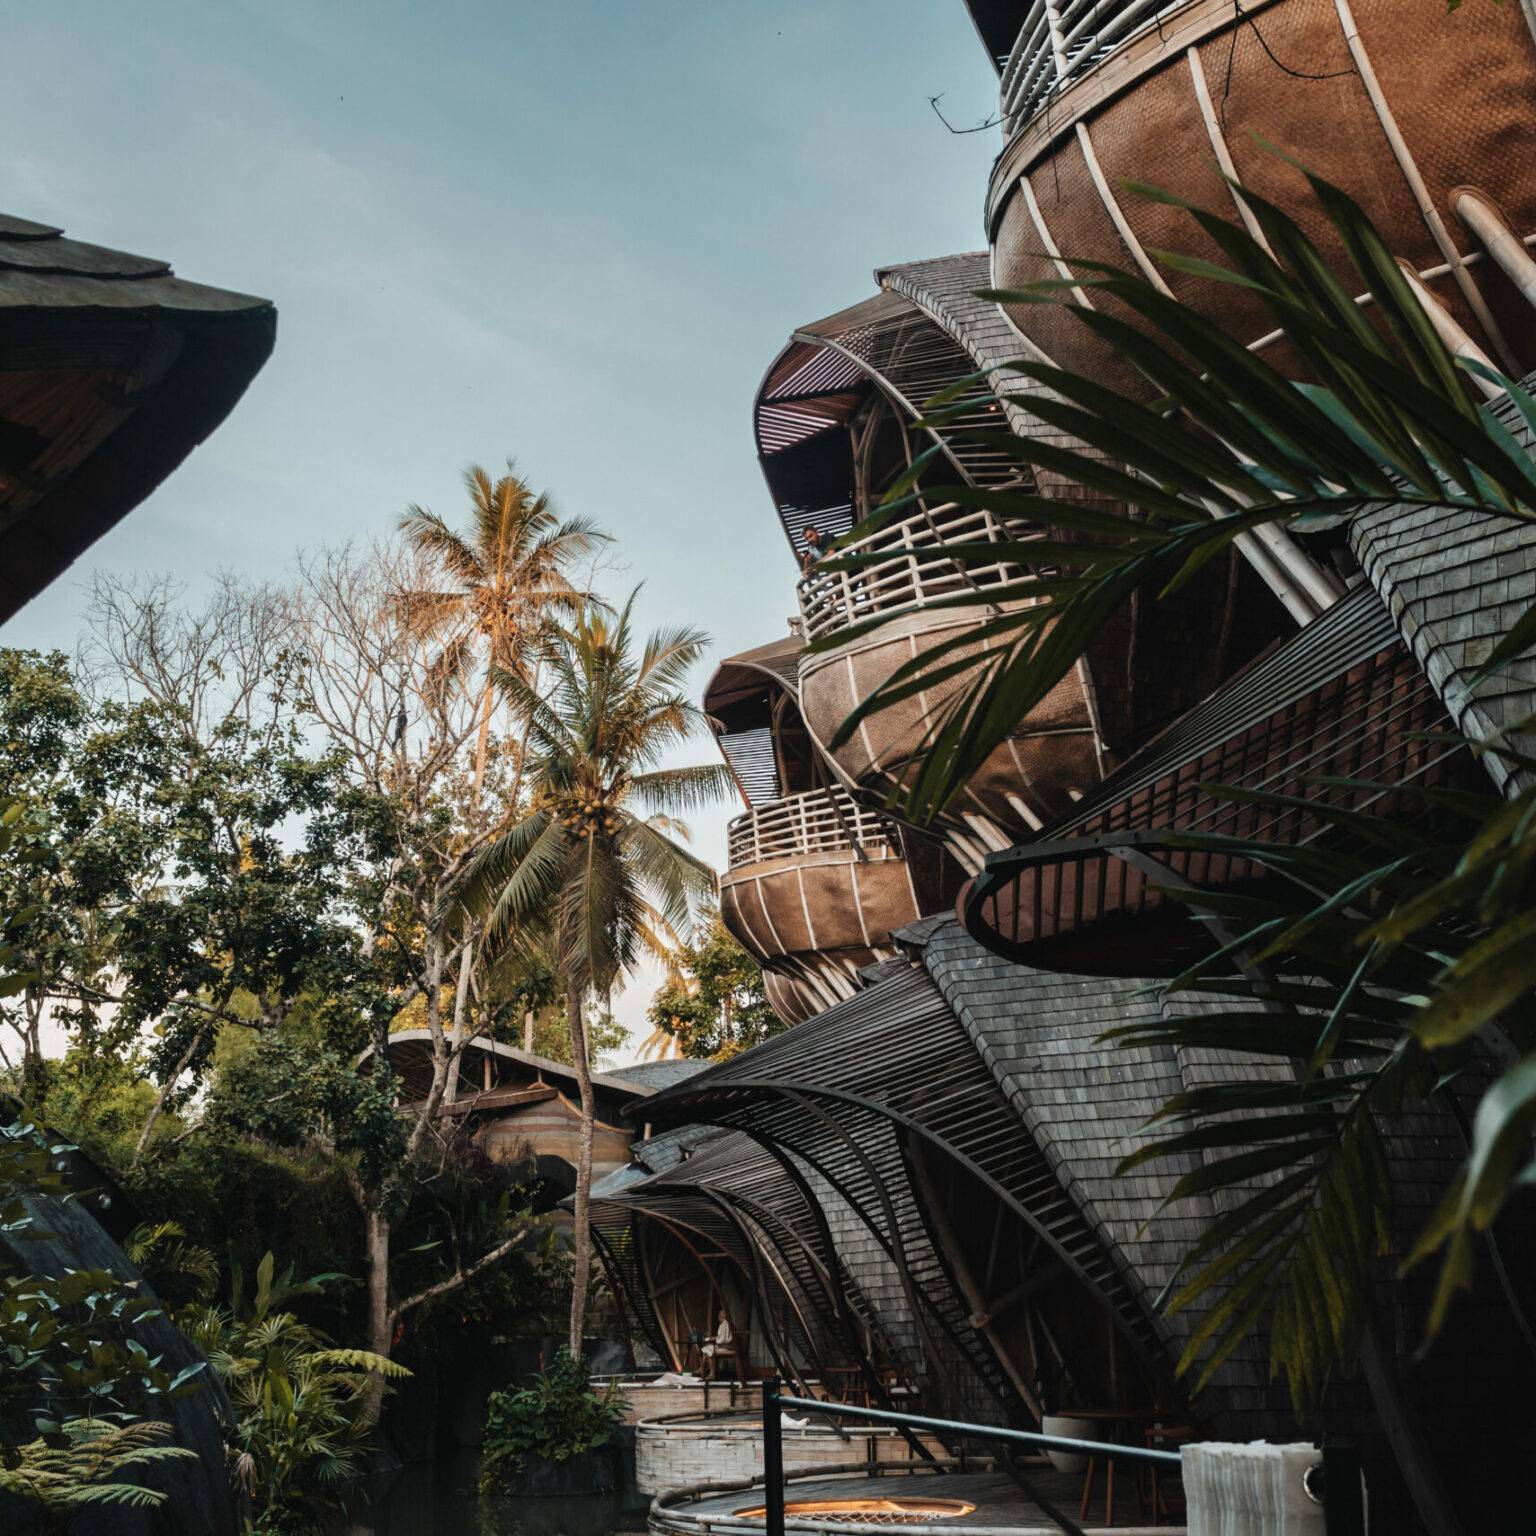 Die Hotelanlage des Ulaman Bali besteht aus vielen Bungalows und ist von Palmen geziert.